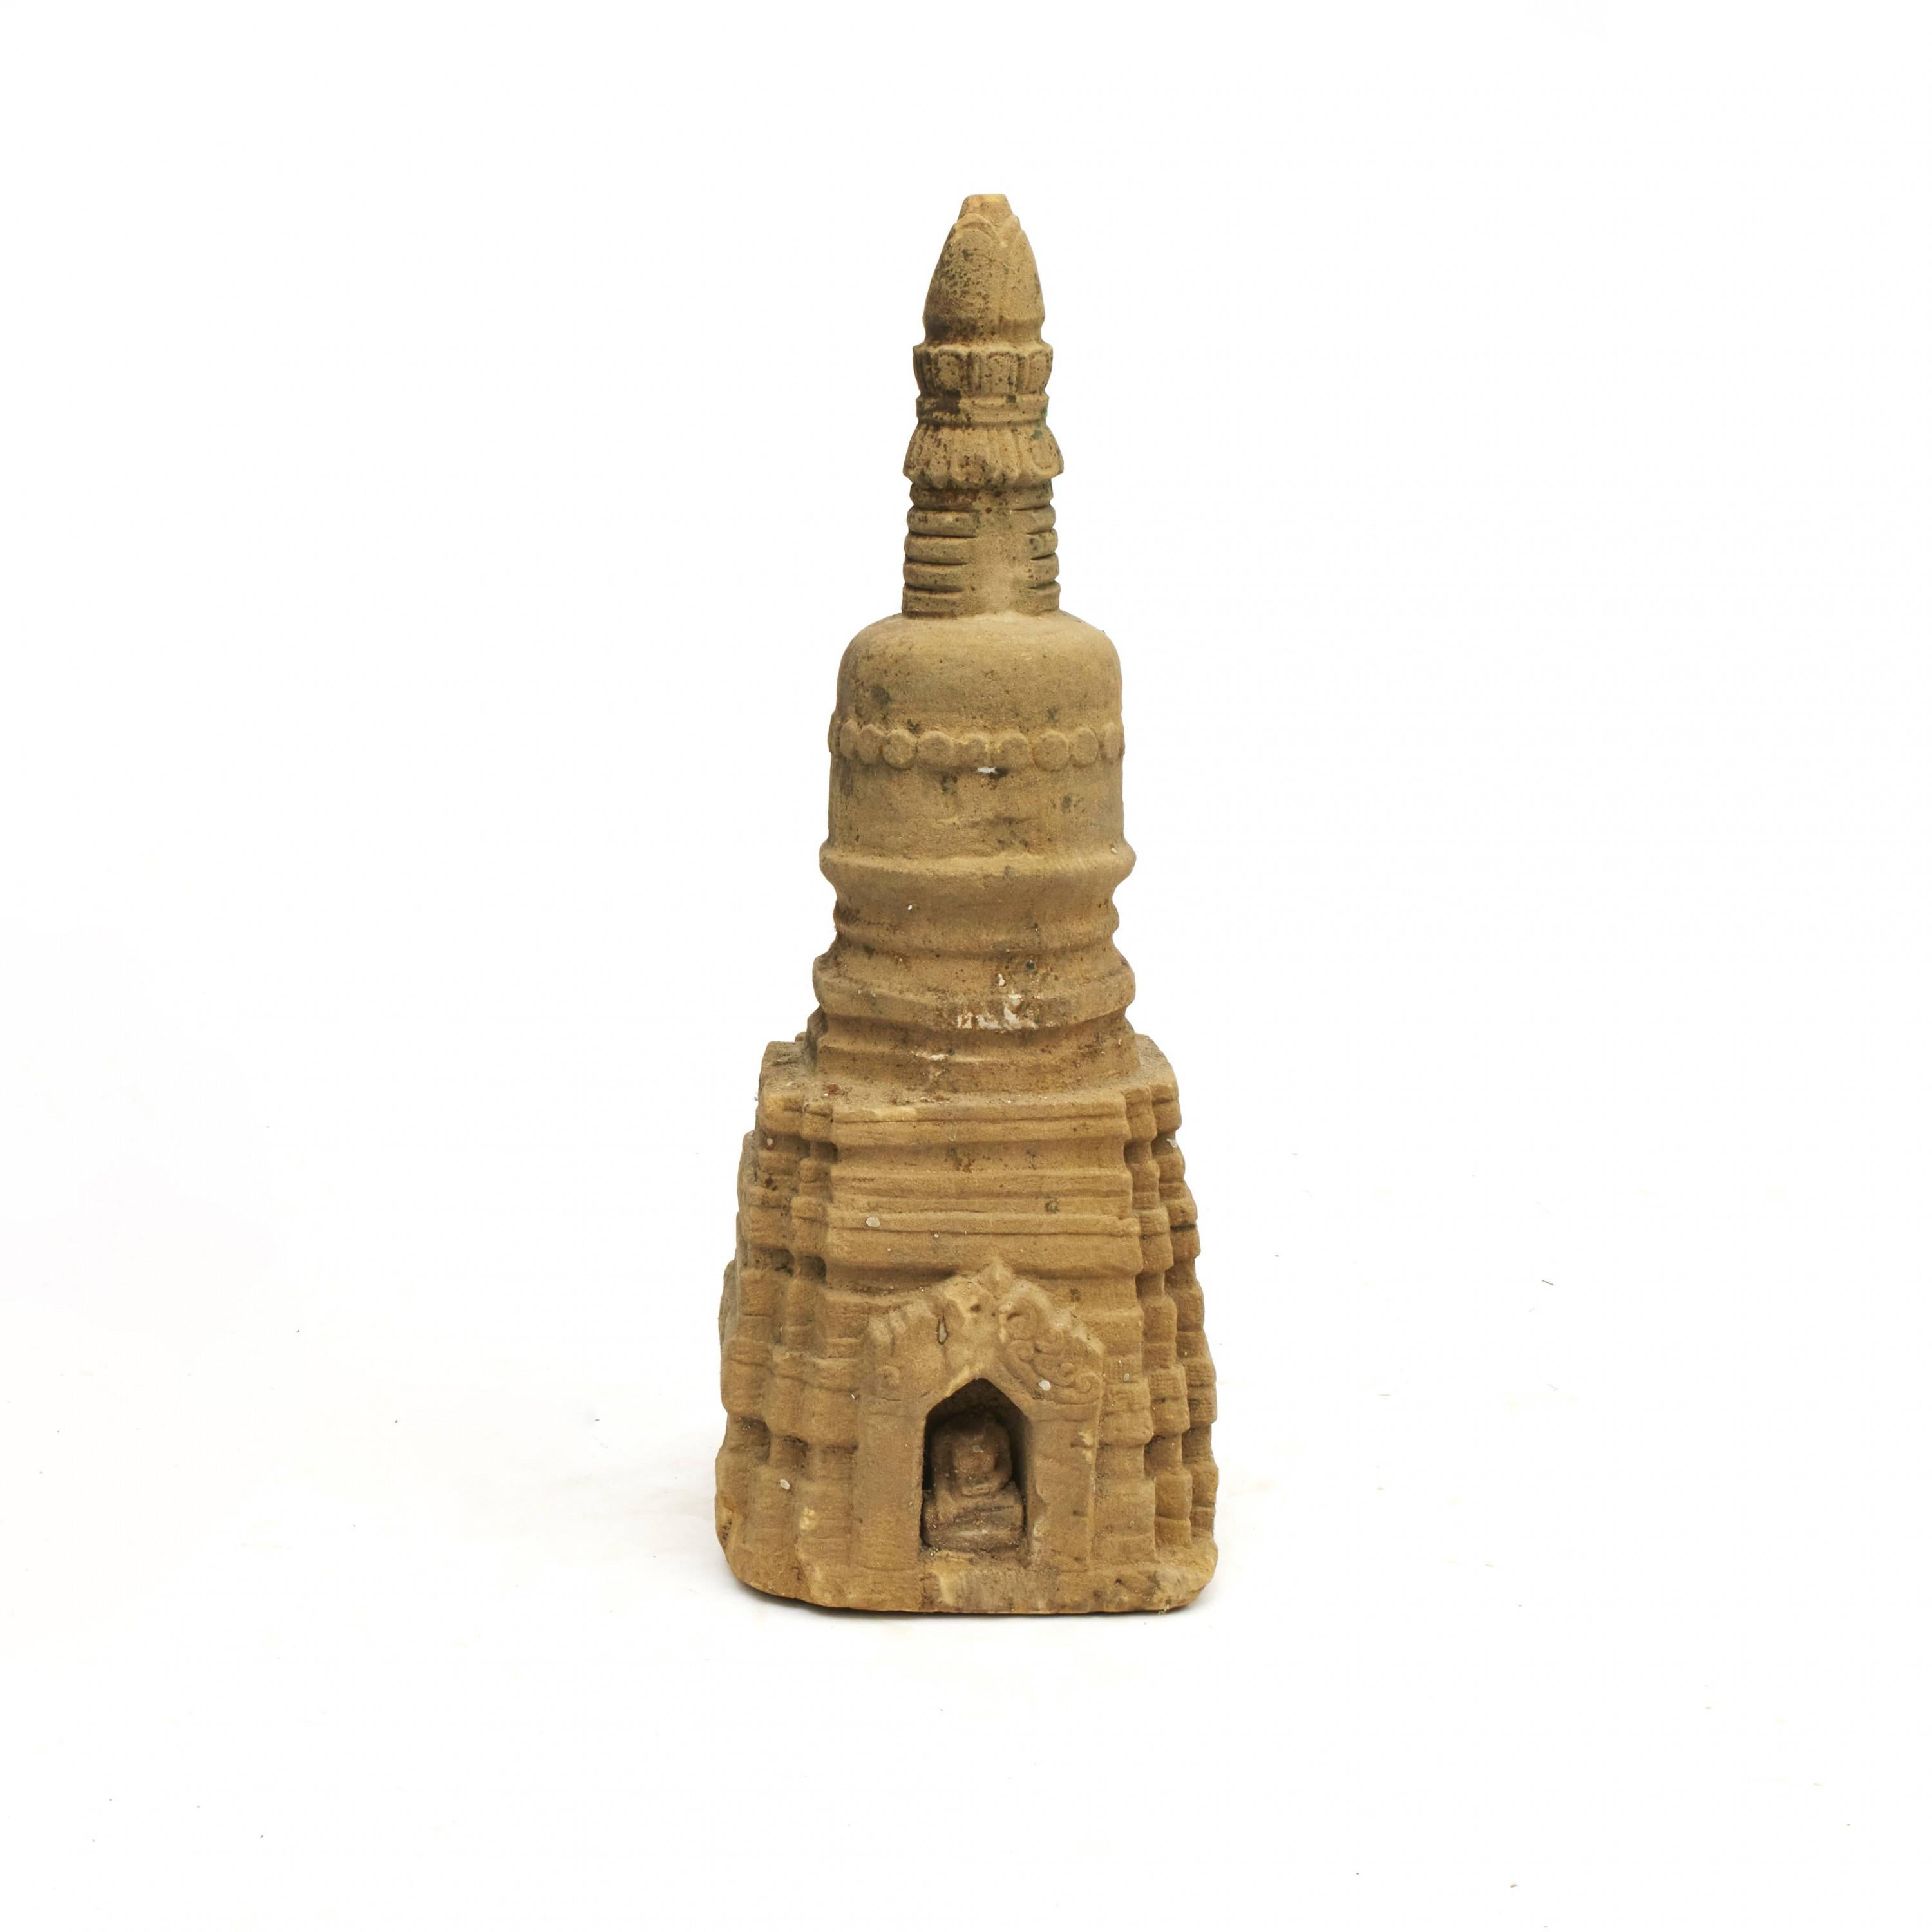 Rare sculpture de stupa, vieille de 400 à 600 ans, taillée dans le grès. En état original intact et bien conservé. D'Arakan en Birmanie.
Construction typique d'un stupa avec une base carrée, un dôme hémisphérique et une flèche conique.
À la base,